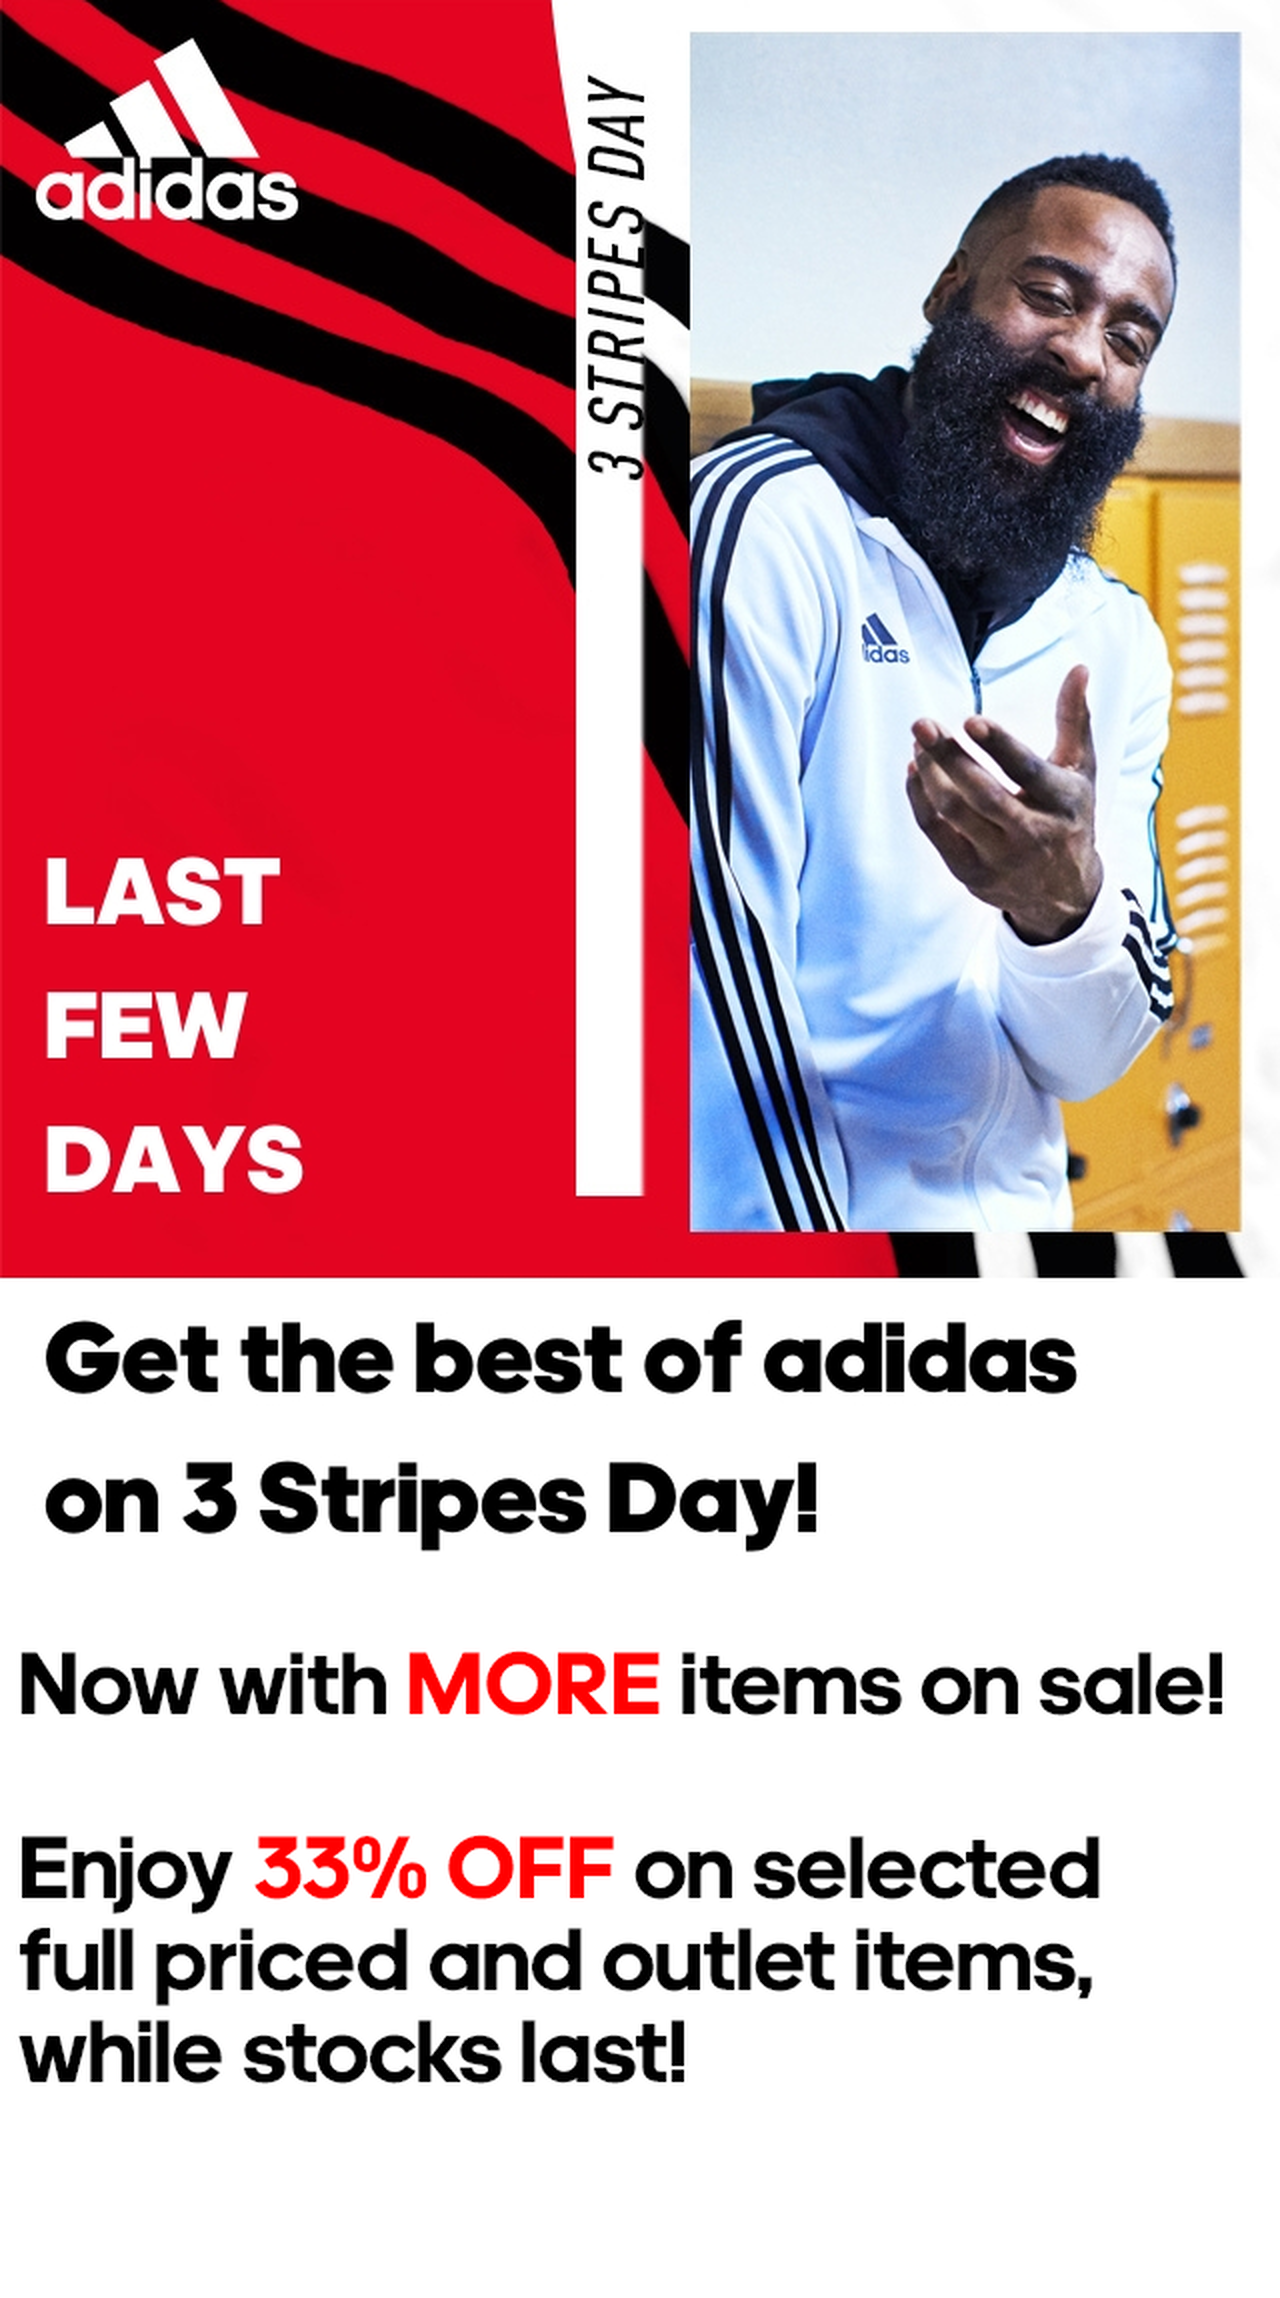 more stripes more adidas